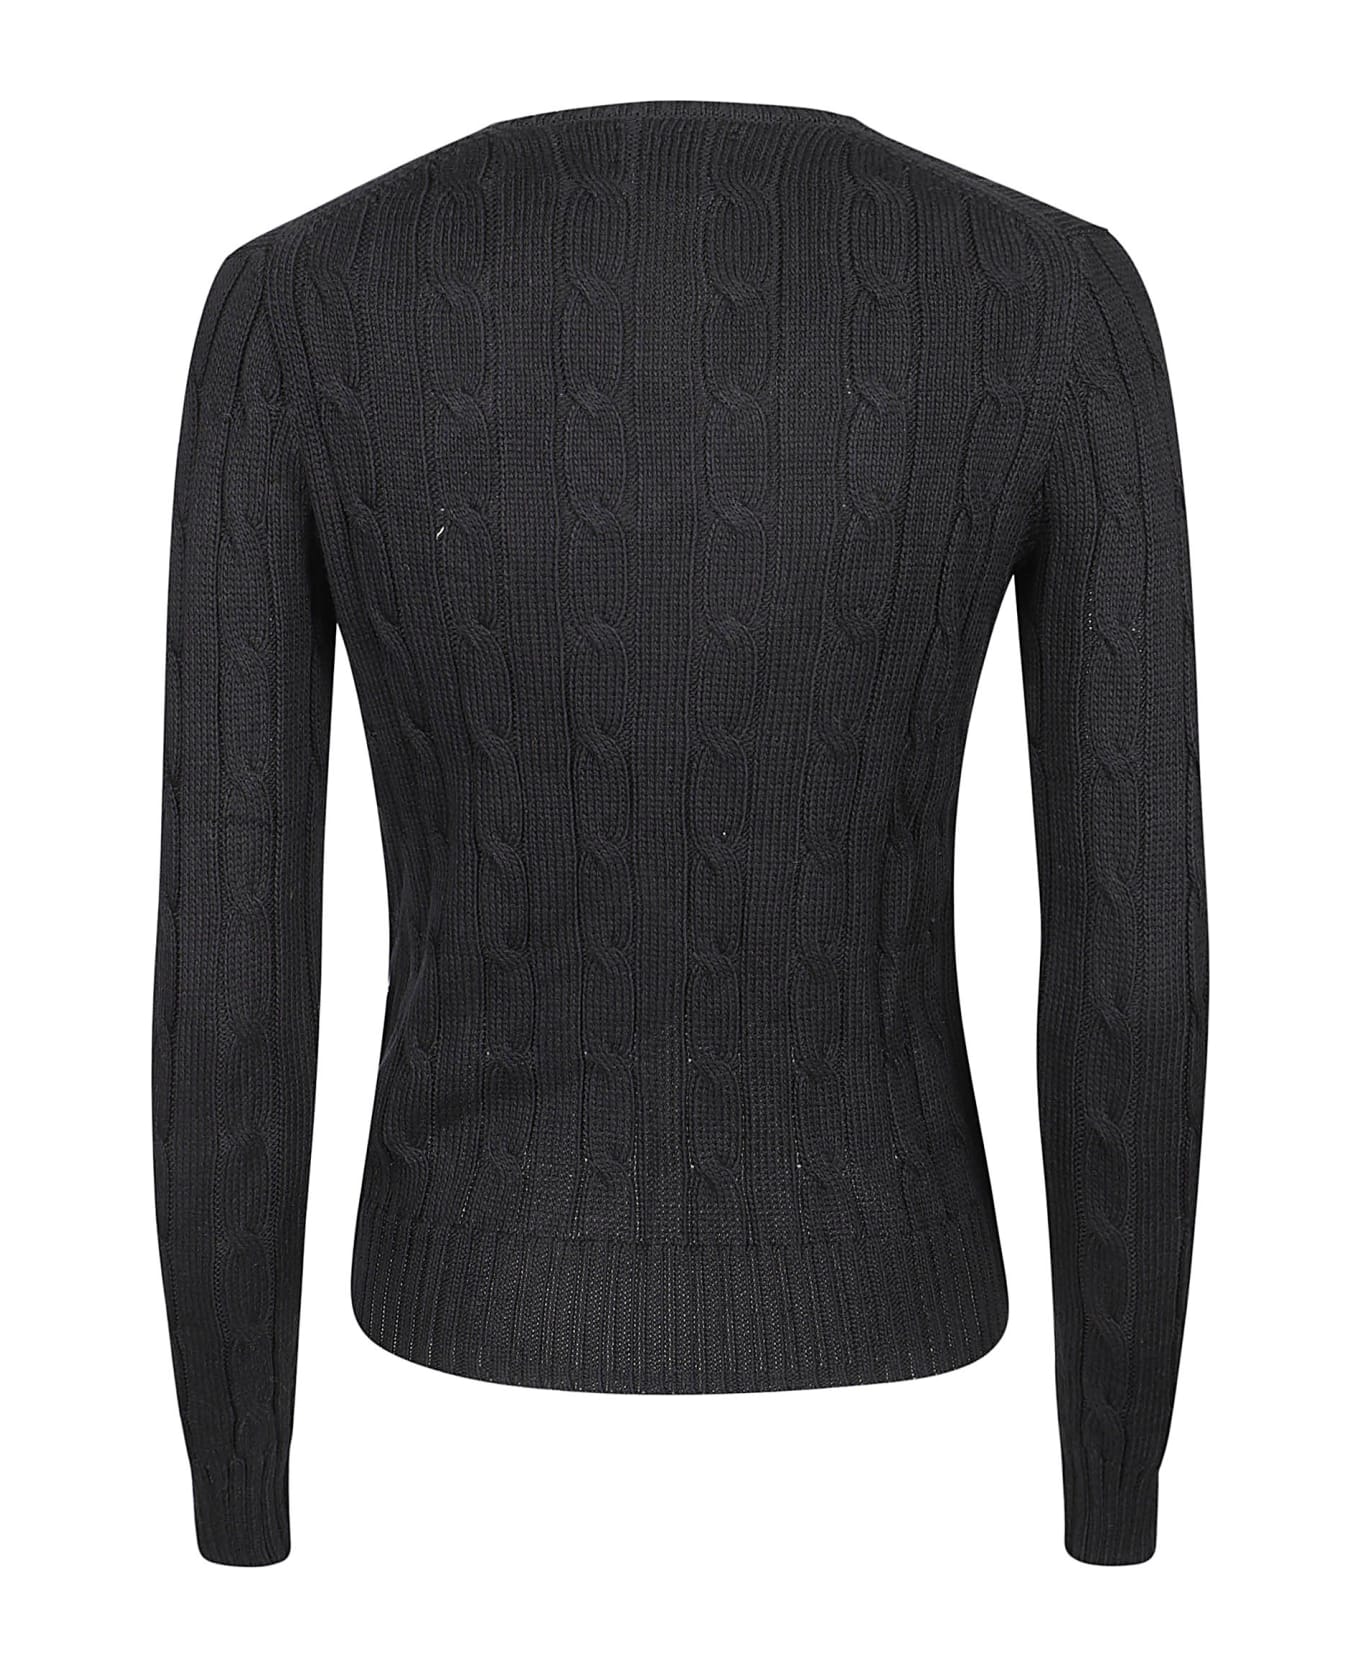 Polo Ralph Lauren Kimberly Sweater - Black ニットウェア